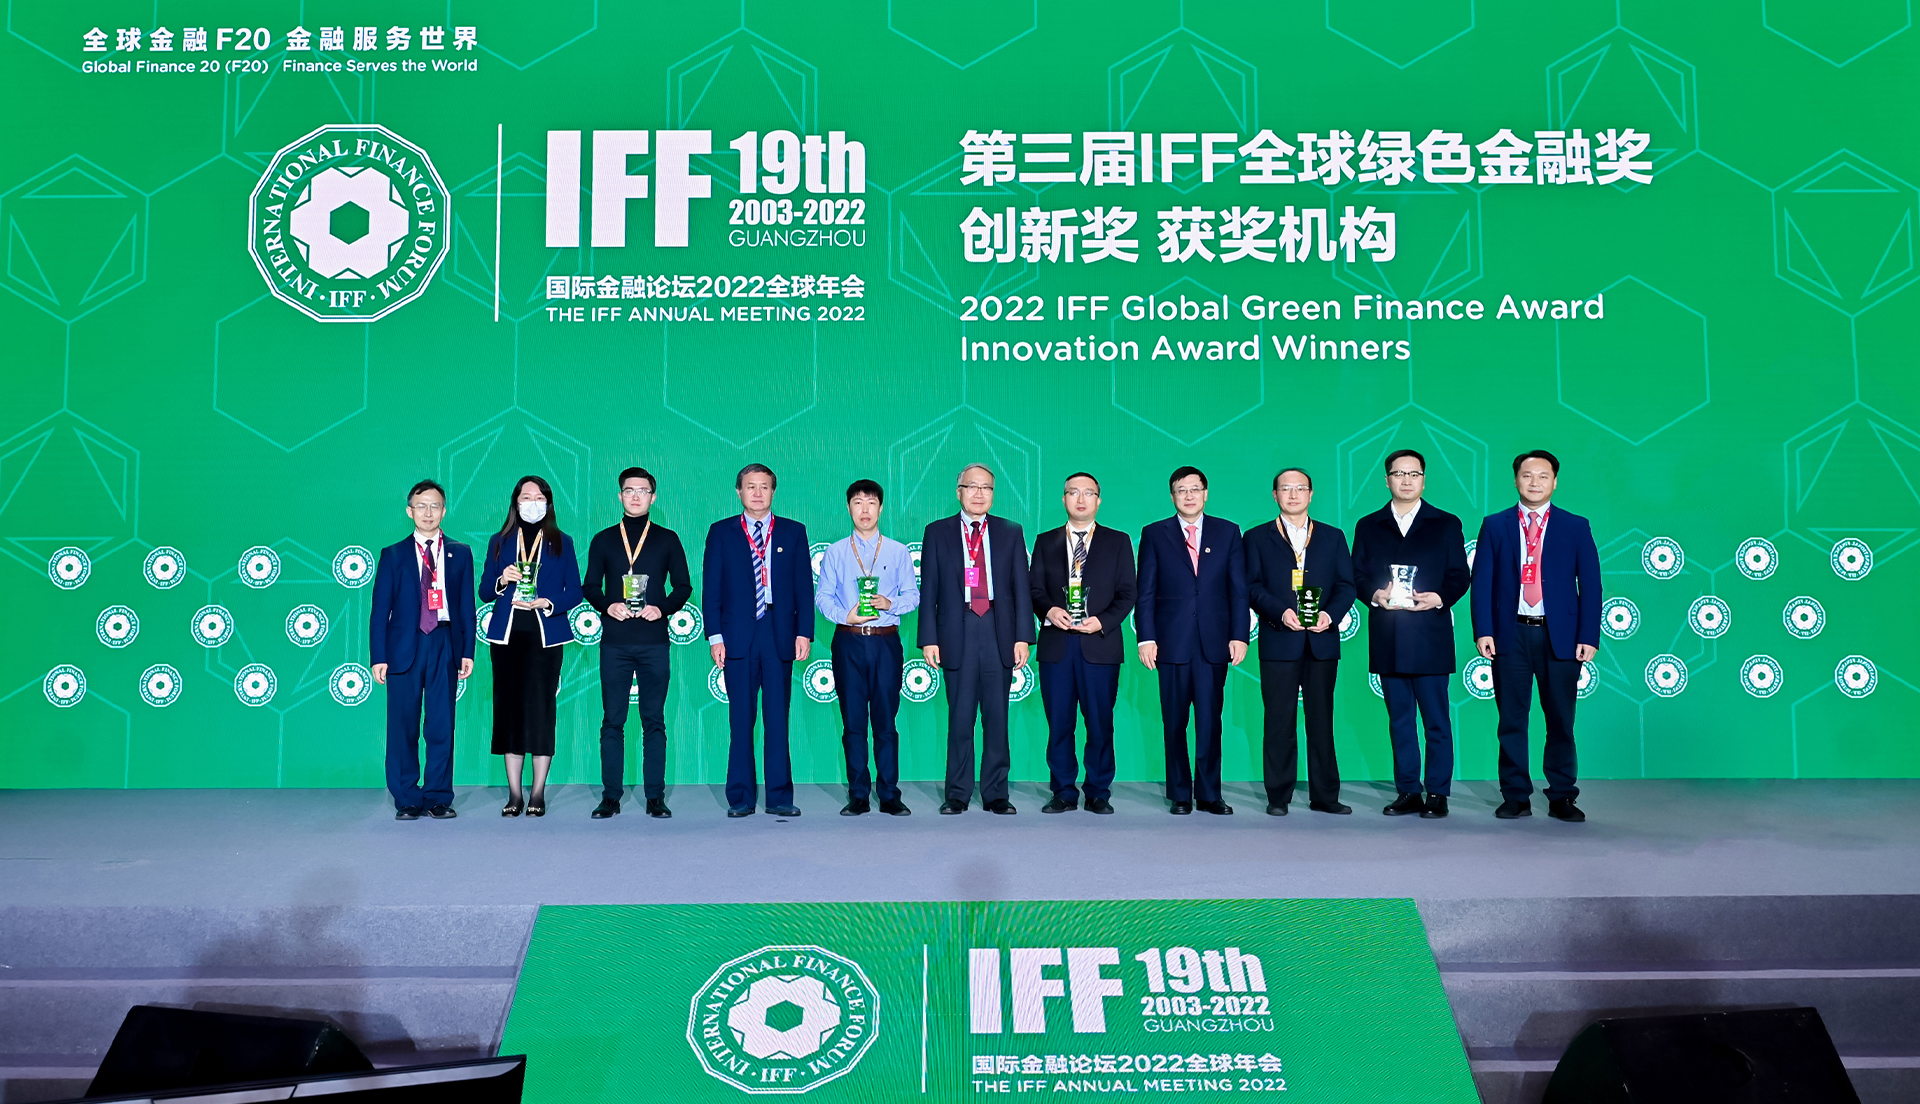 国际金融论坛(IFF)第19届全球年会第三届IFF全球绿色金融奖创新奖颁奖合影